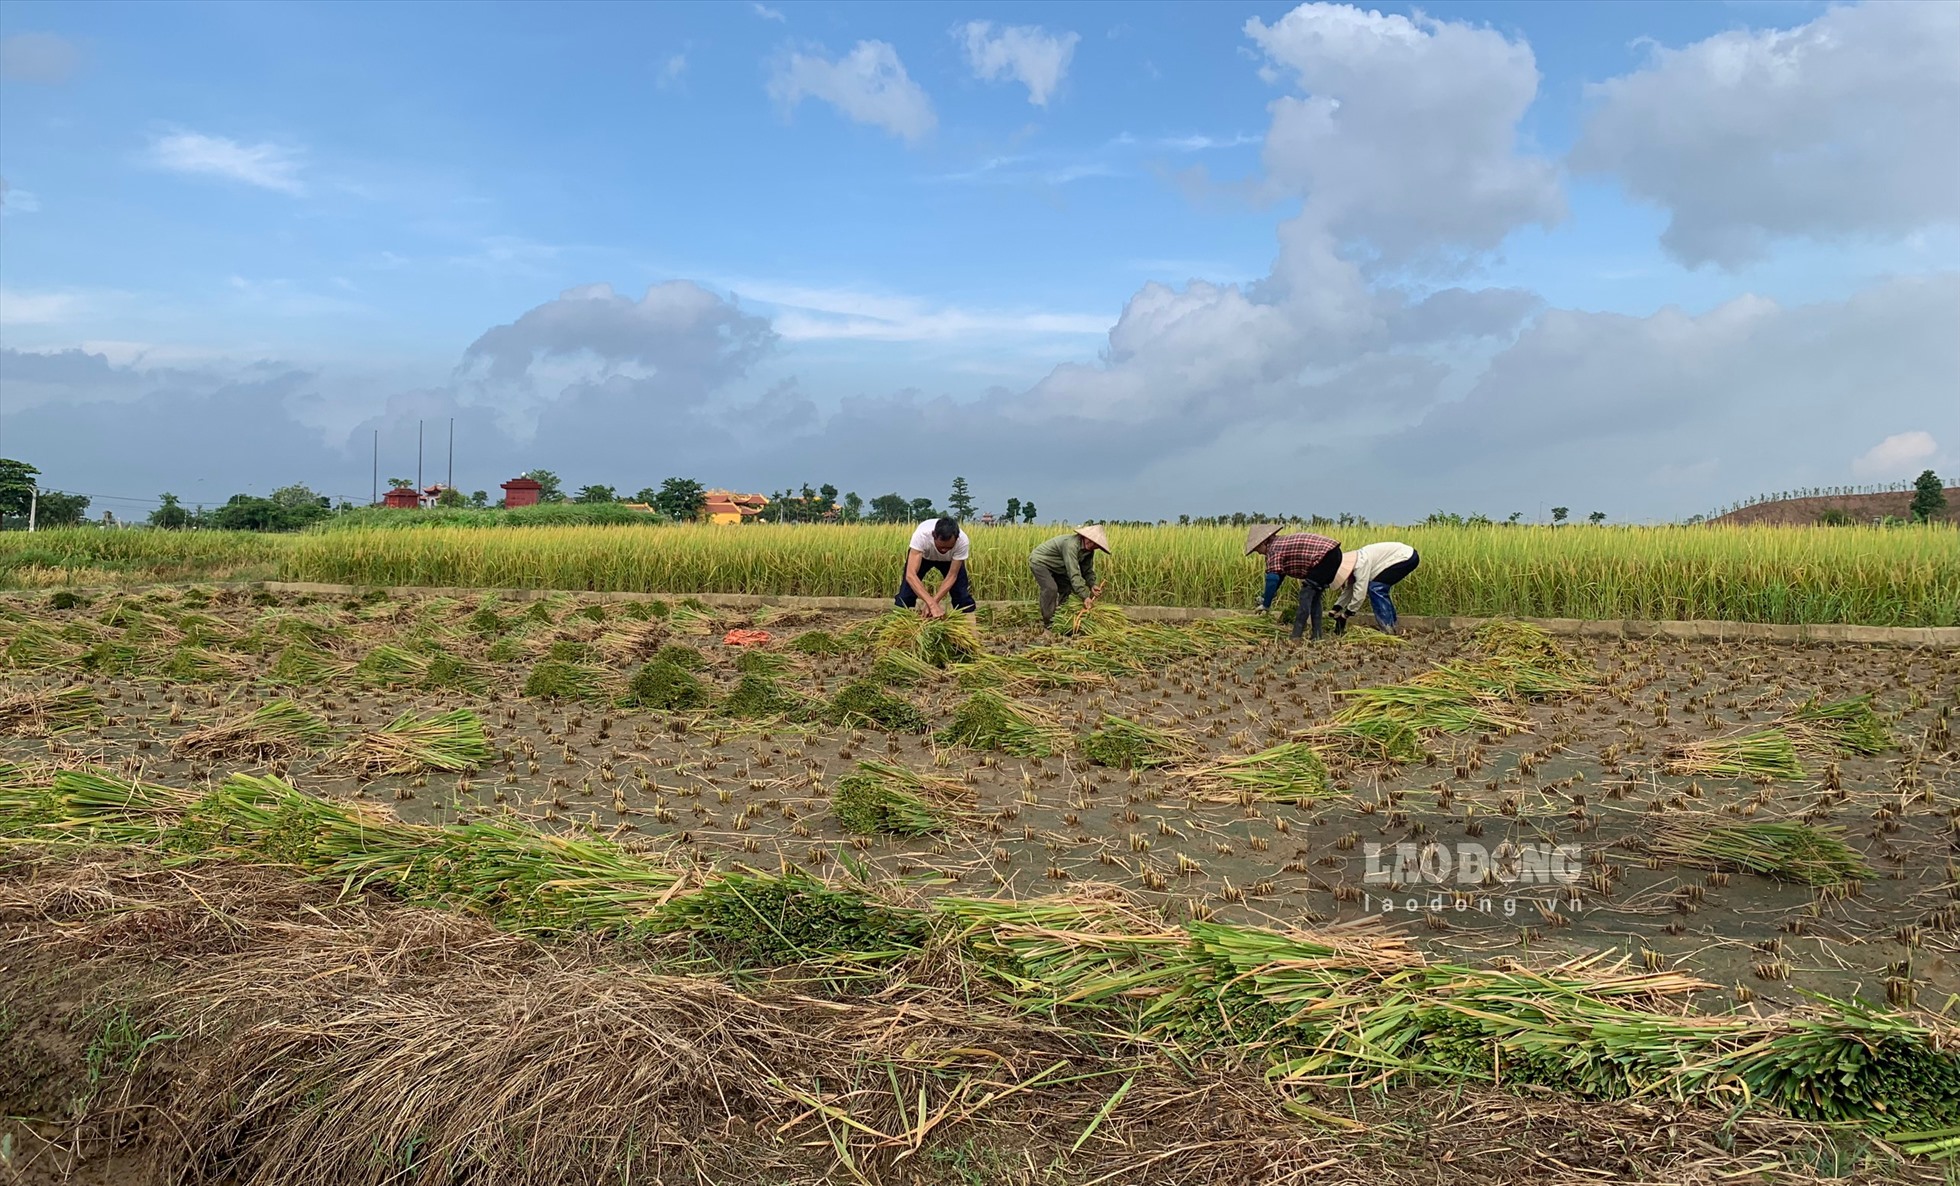 Khắp các cánh đồng ở huyện Đông Hưng (tỉnh Thái Bình) thời điểm này, lúa đã bắt đầu chín rộ. Nông dân tranh thủ thời tiết thuận lợi thu hoạch lúa sớm. Tiếng máy gặt đập liên hoàn xen lẫn tiếng cười của người nông dân tạo nên âm vang nhộn nhịp cả một vùng.